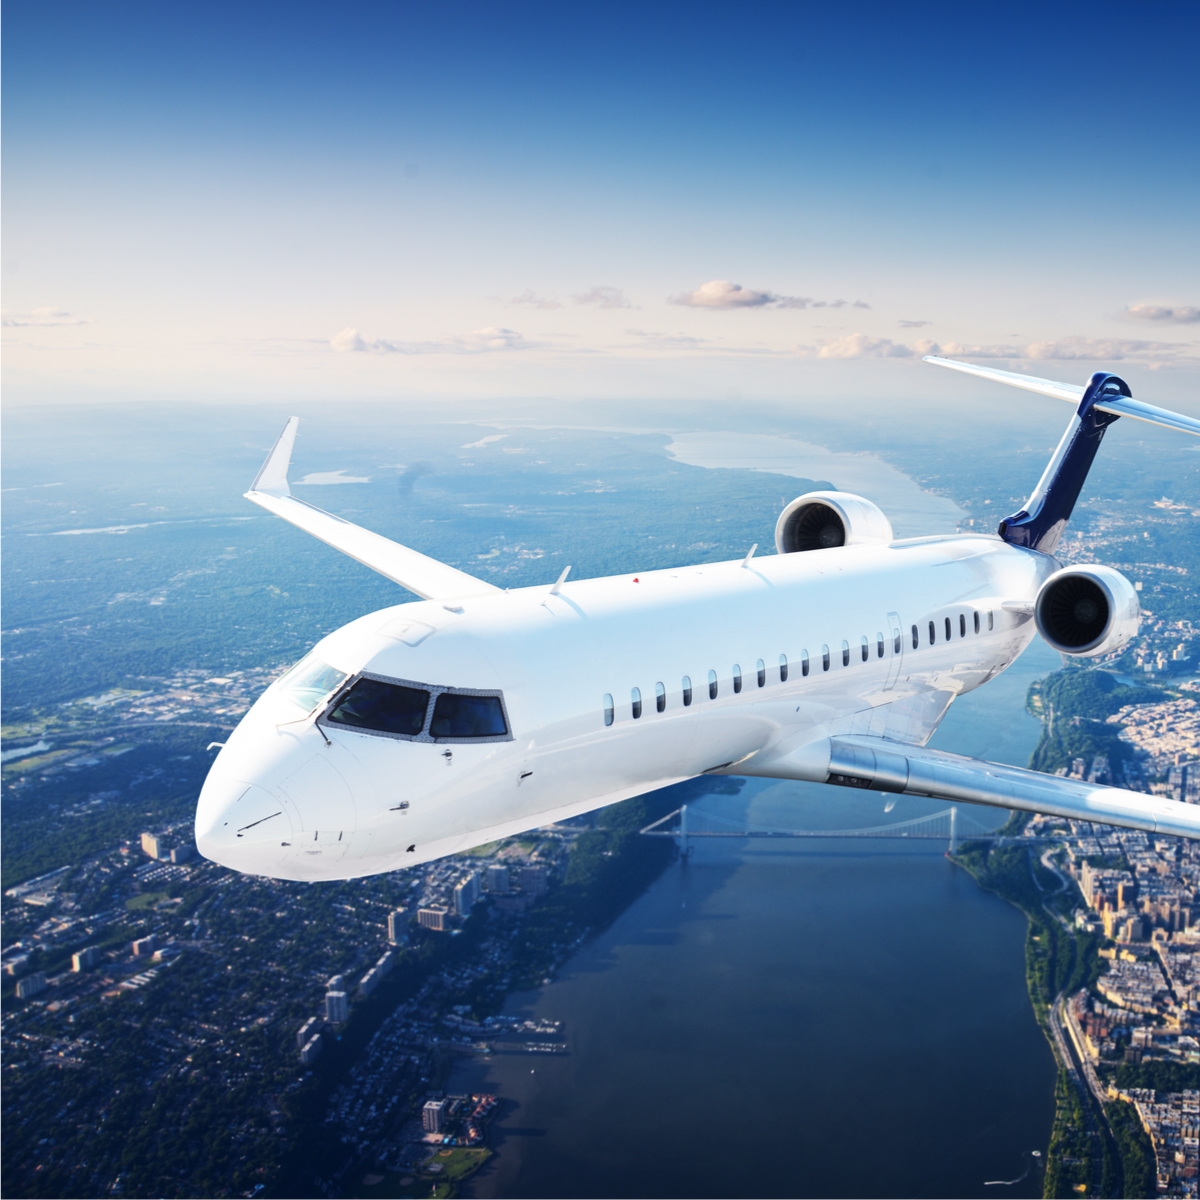 Avionics financing